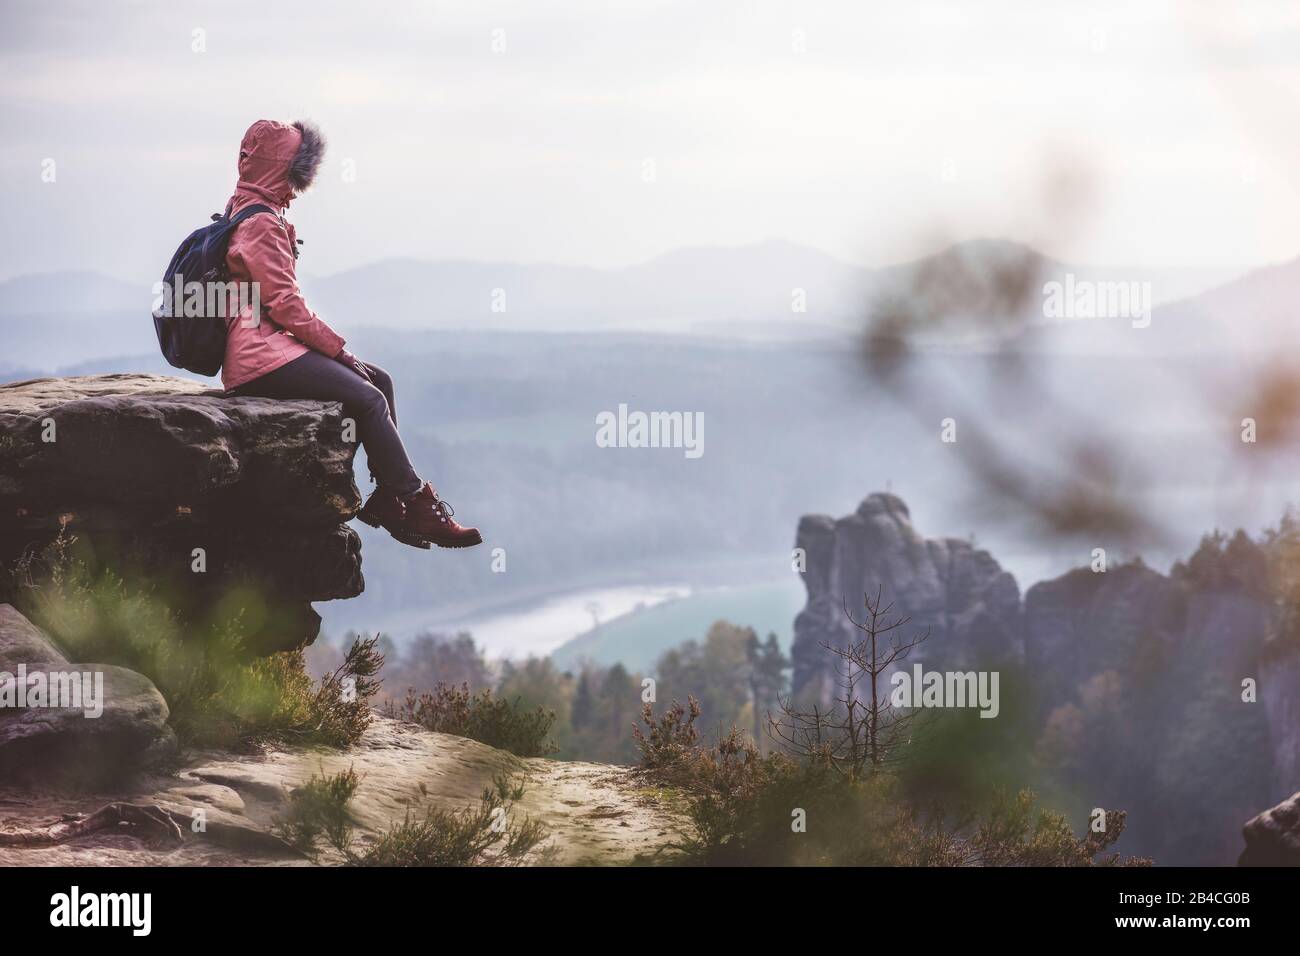 Junge Frau in winterlicher Kleidung mit Rucksack, sitzt am Rand der Klippe und genießt die Aussicht über Berge, tal und Fluss, Reise-Lifestyle-Konzept Foto Stock